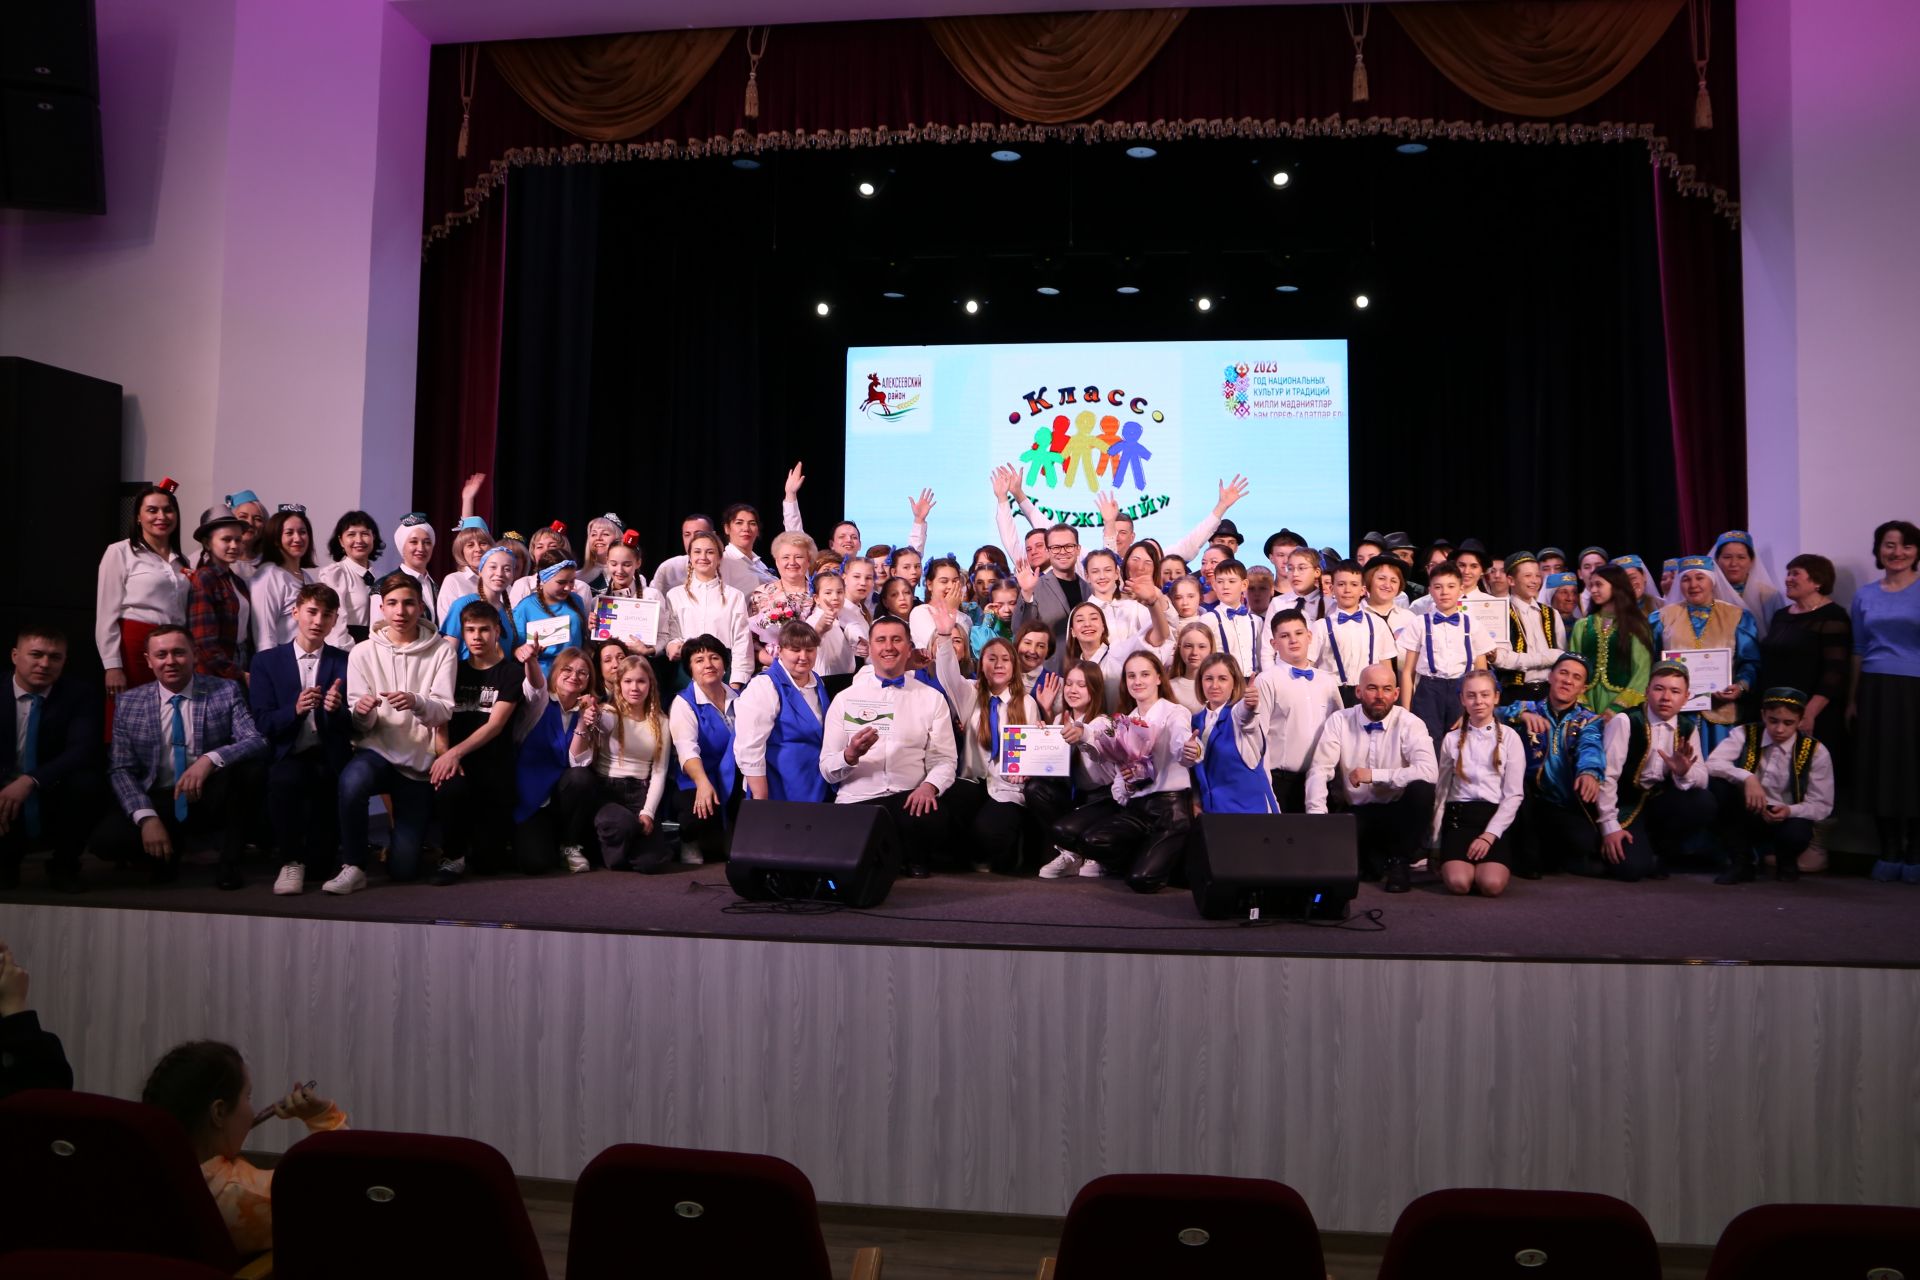 Родительский комитет Алексеевской школы №2 стал победителем зонального этапа республиканского конкурса «Секреты дружного класса»